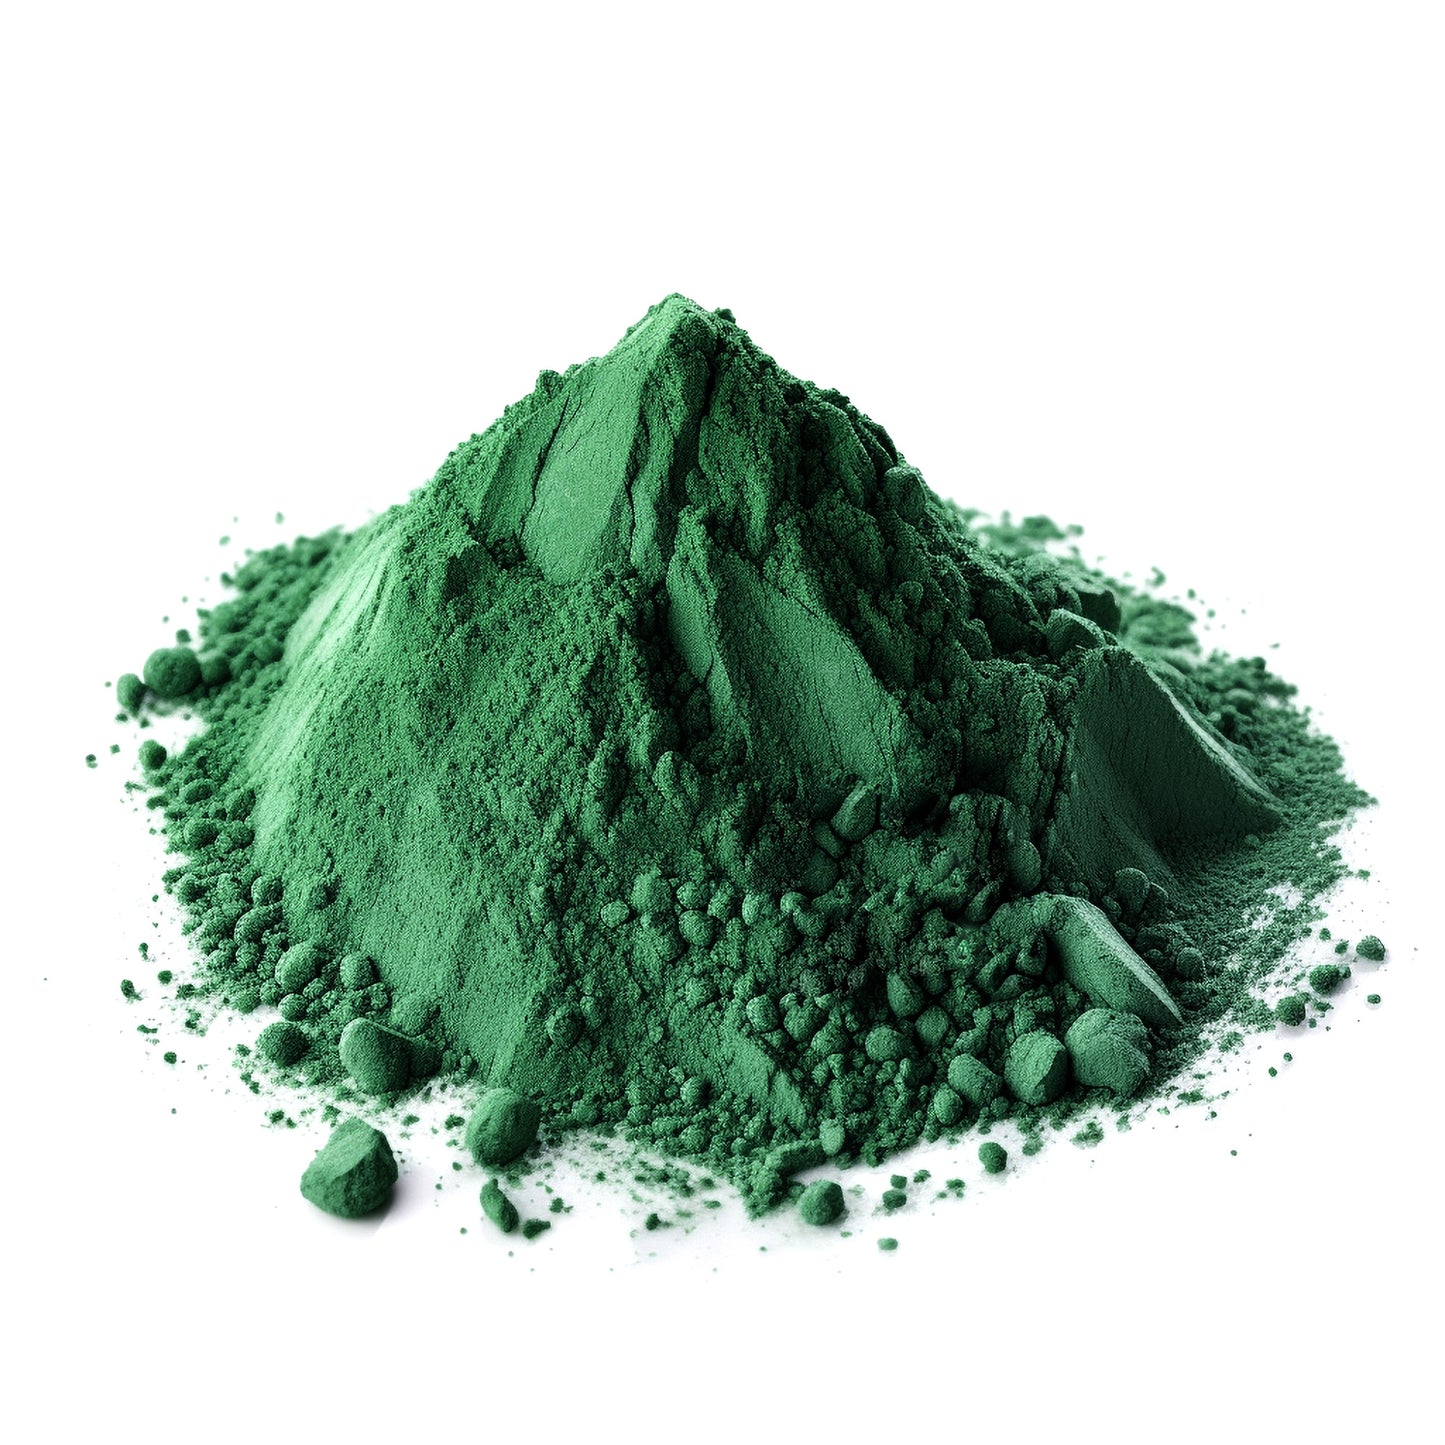 Chromoxidfarbe Grün, Farb-Pigment für Beton und Putz, 1kg